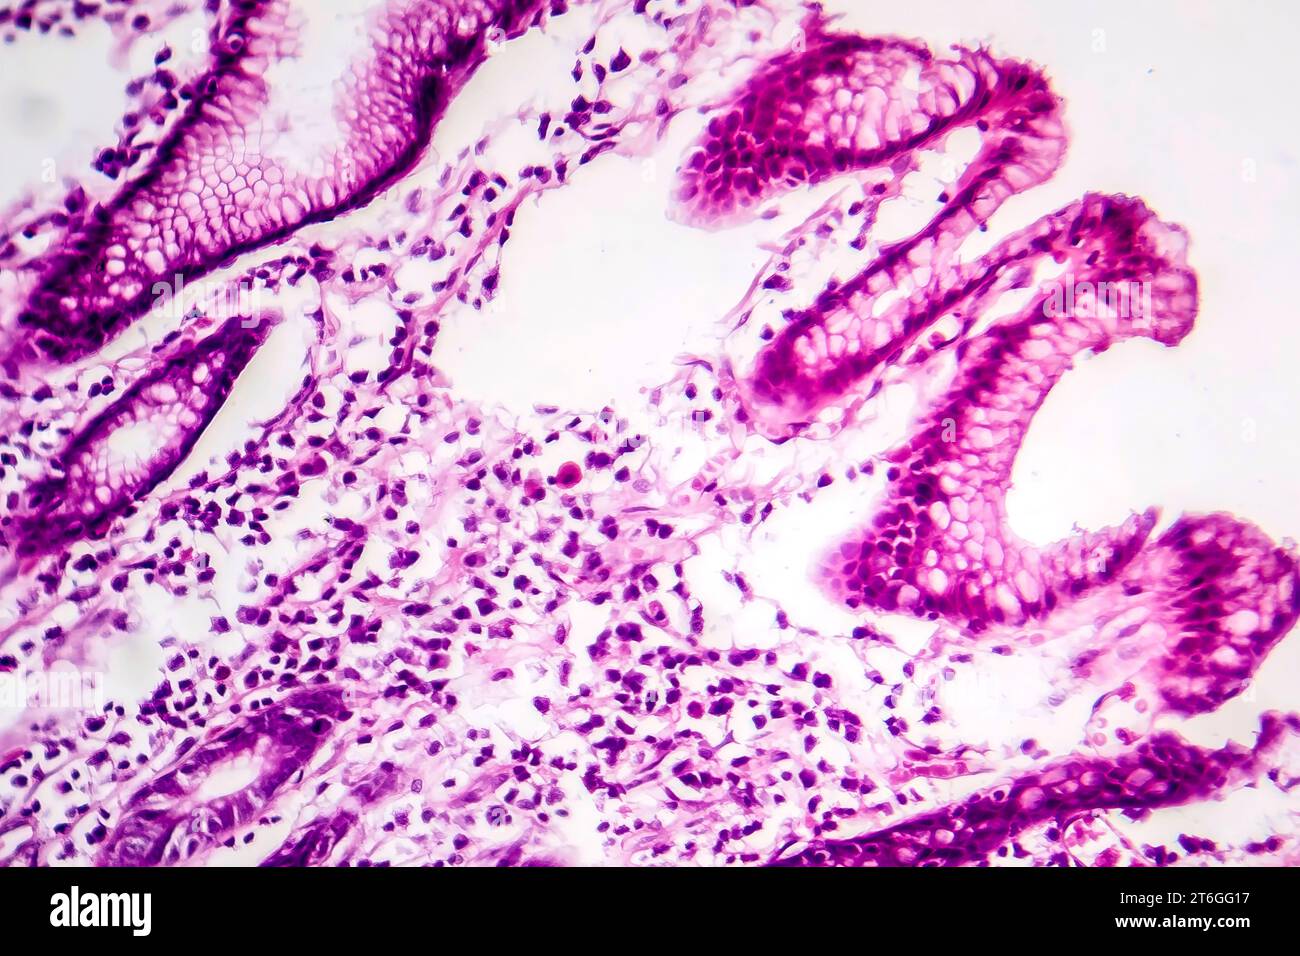 Photomicrographie des métaplasies intestinales, montrant la transformation des cellules de la muqueuse gastrique en cellules intestinales. Banque D'Images